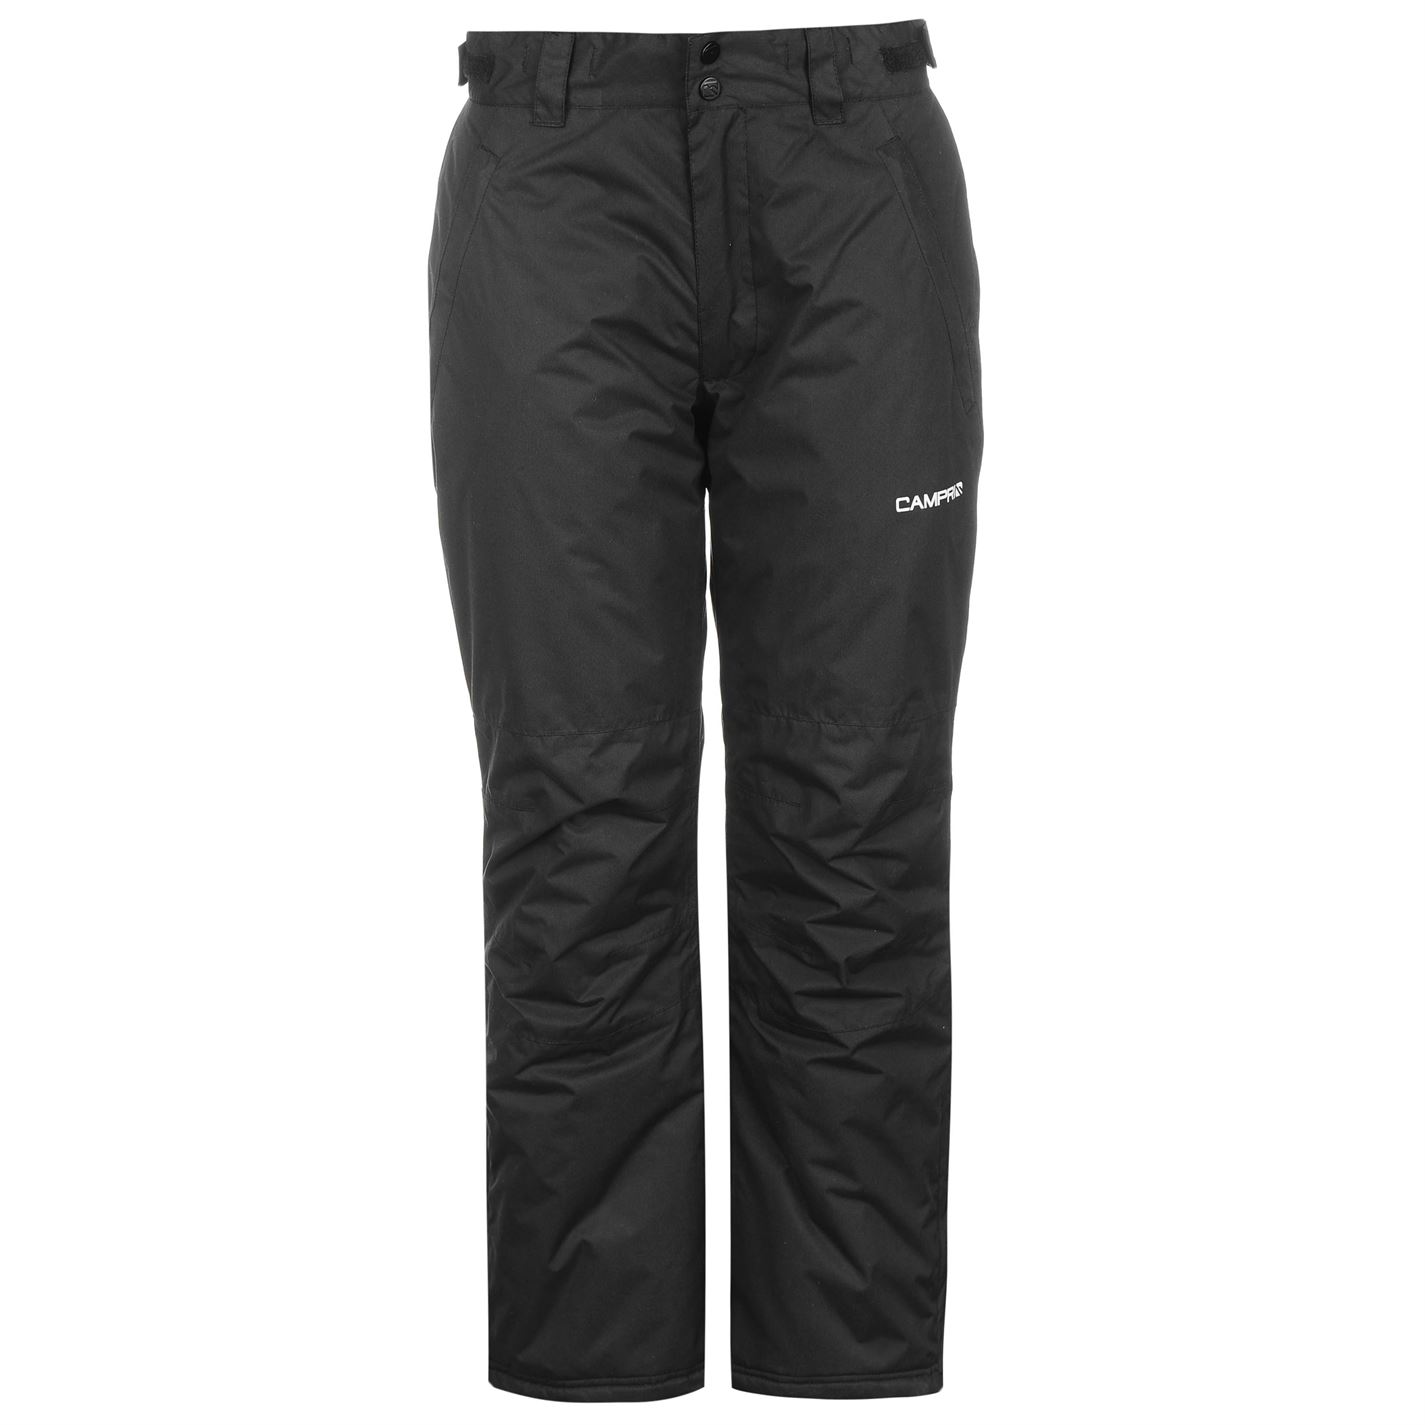 dámské zimní lyžařské kalhoty CAMPRI - BLACK - S